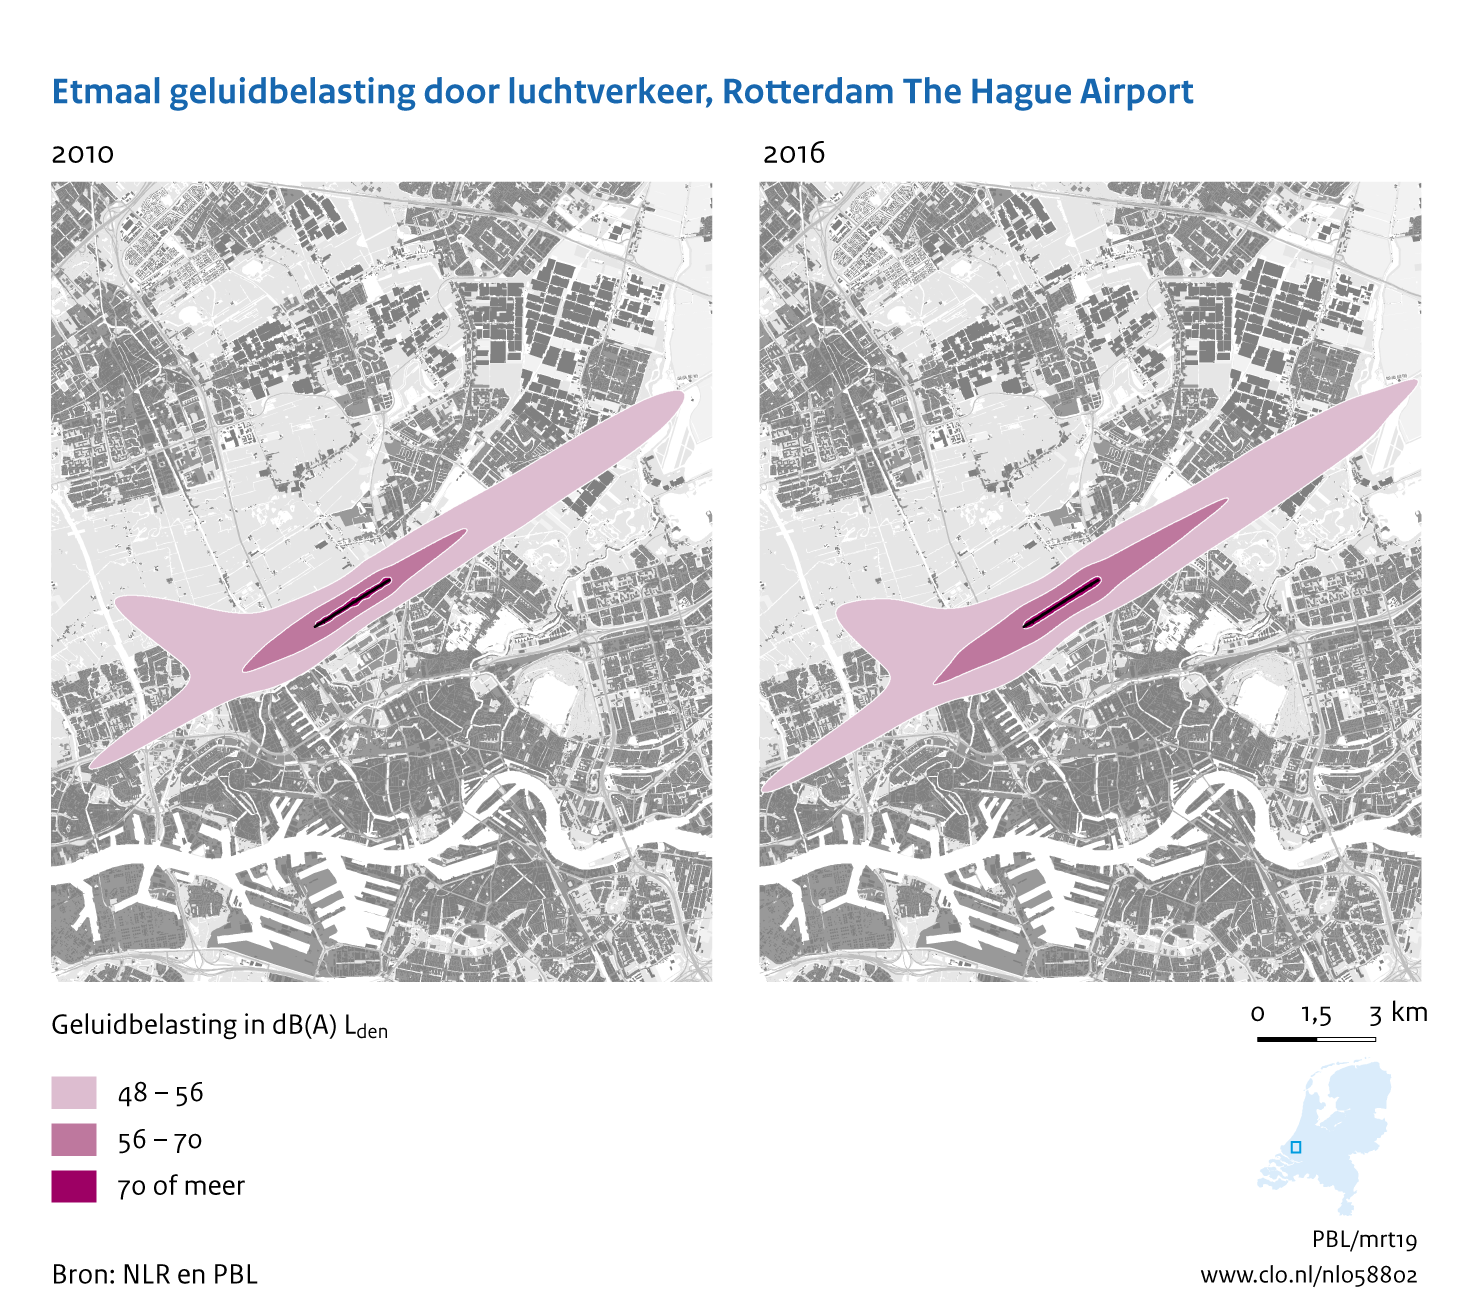 Figuur Etmaal geluidbelasting door luchtvaart, Rotterdam The Hague Airport, 2010-2016. In de rest van de tekst wordt deze figuur uitgebreider uitgelegd.